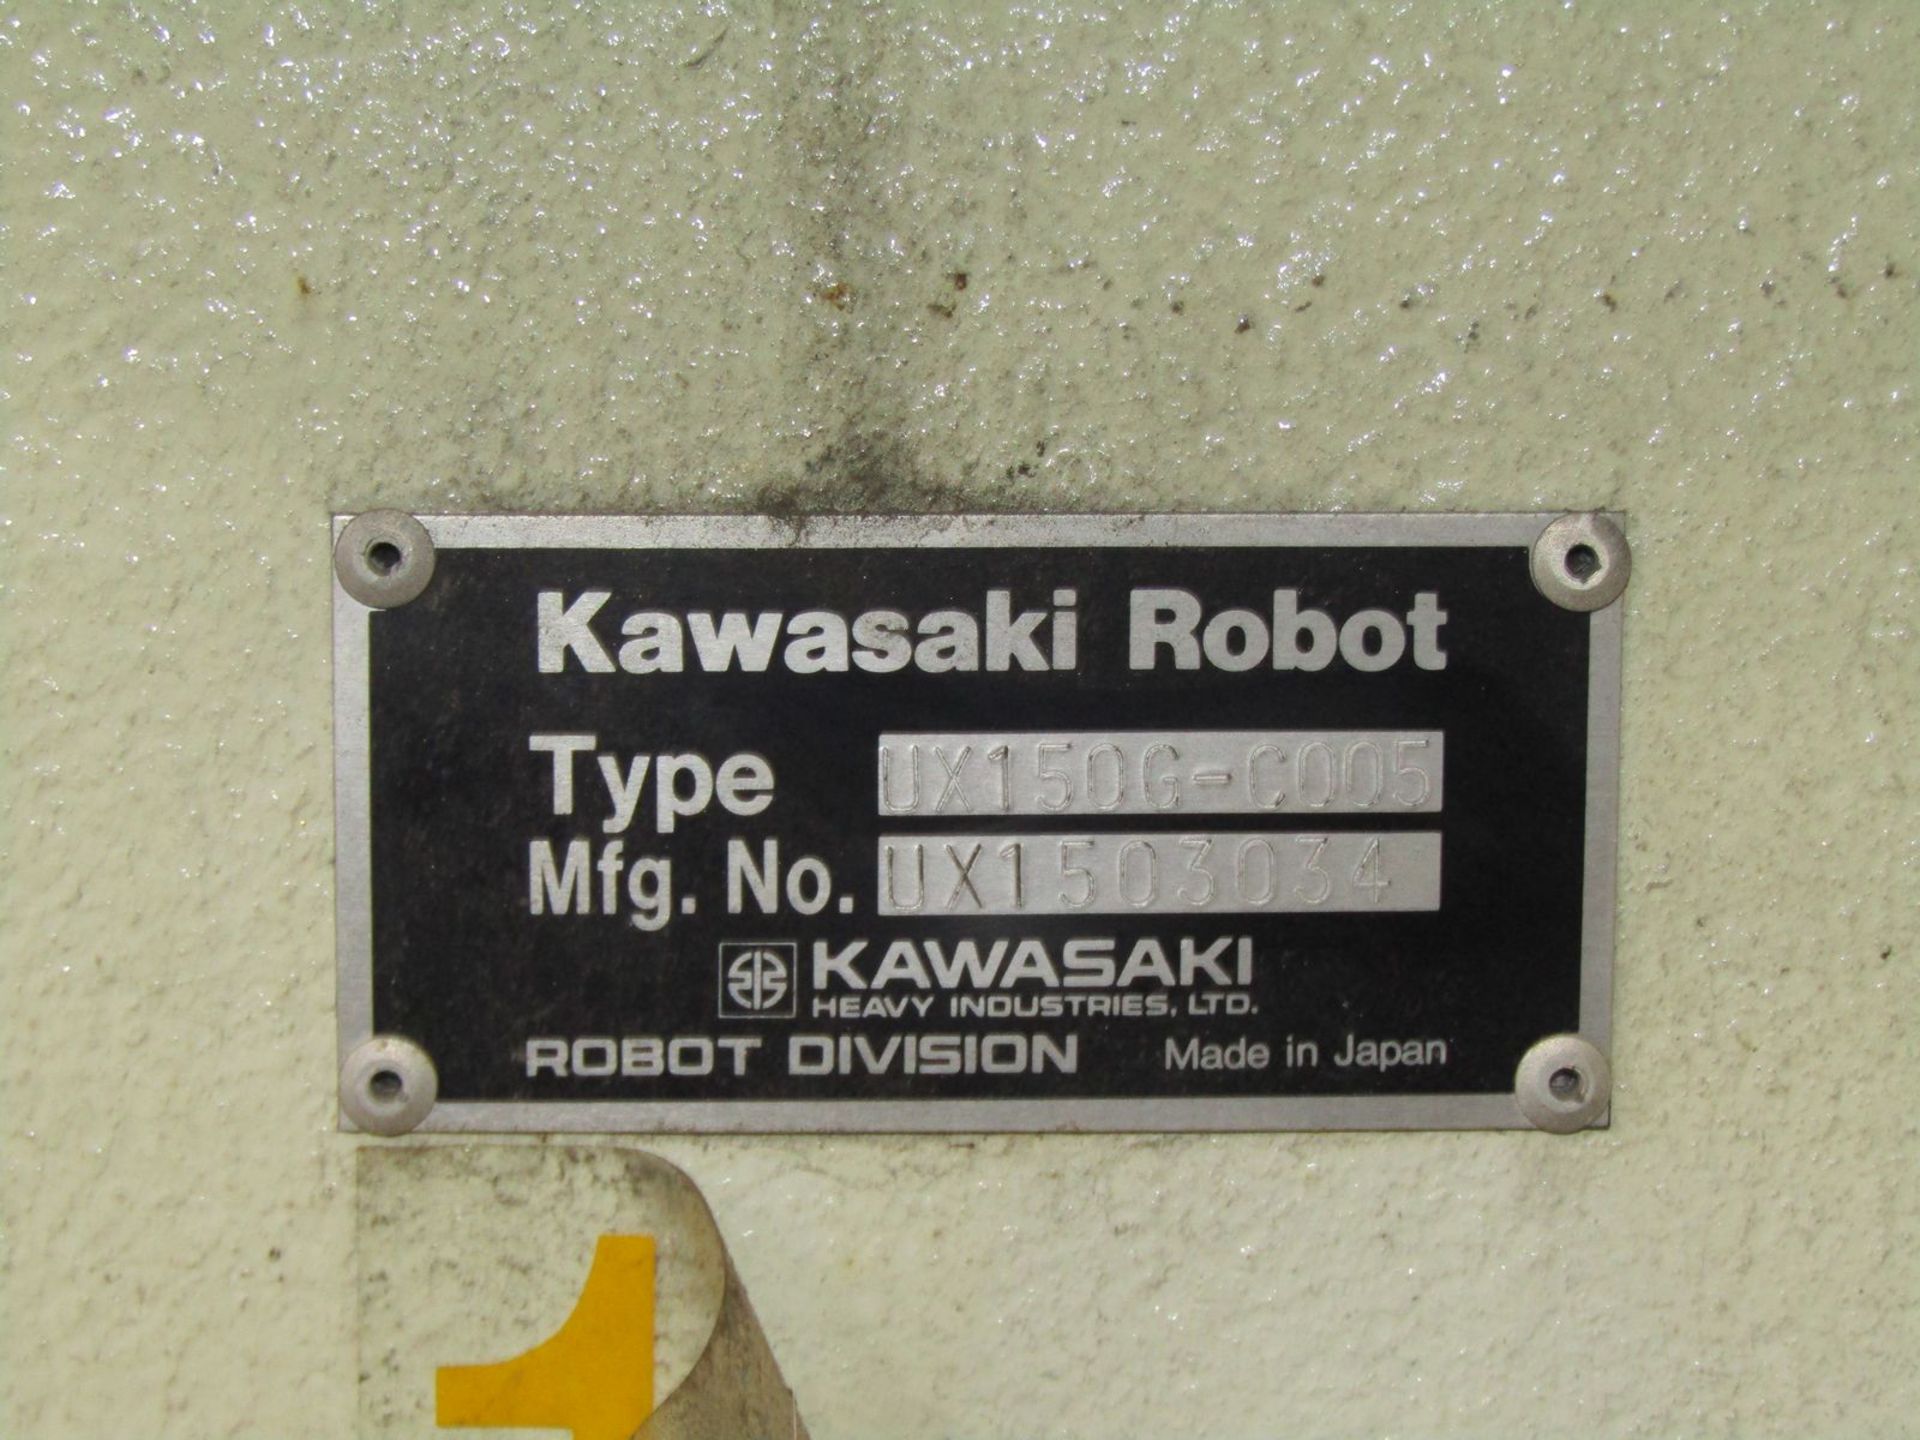 Kawasaki 6-Axis Model UX150G-C005 Robot, S/N: UX1503034 - Image 3 of 3